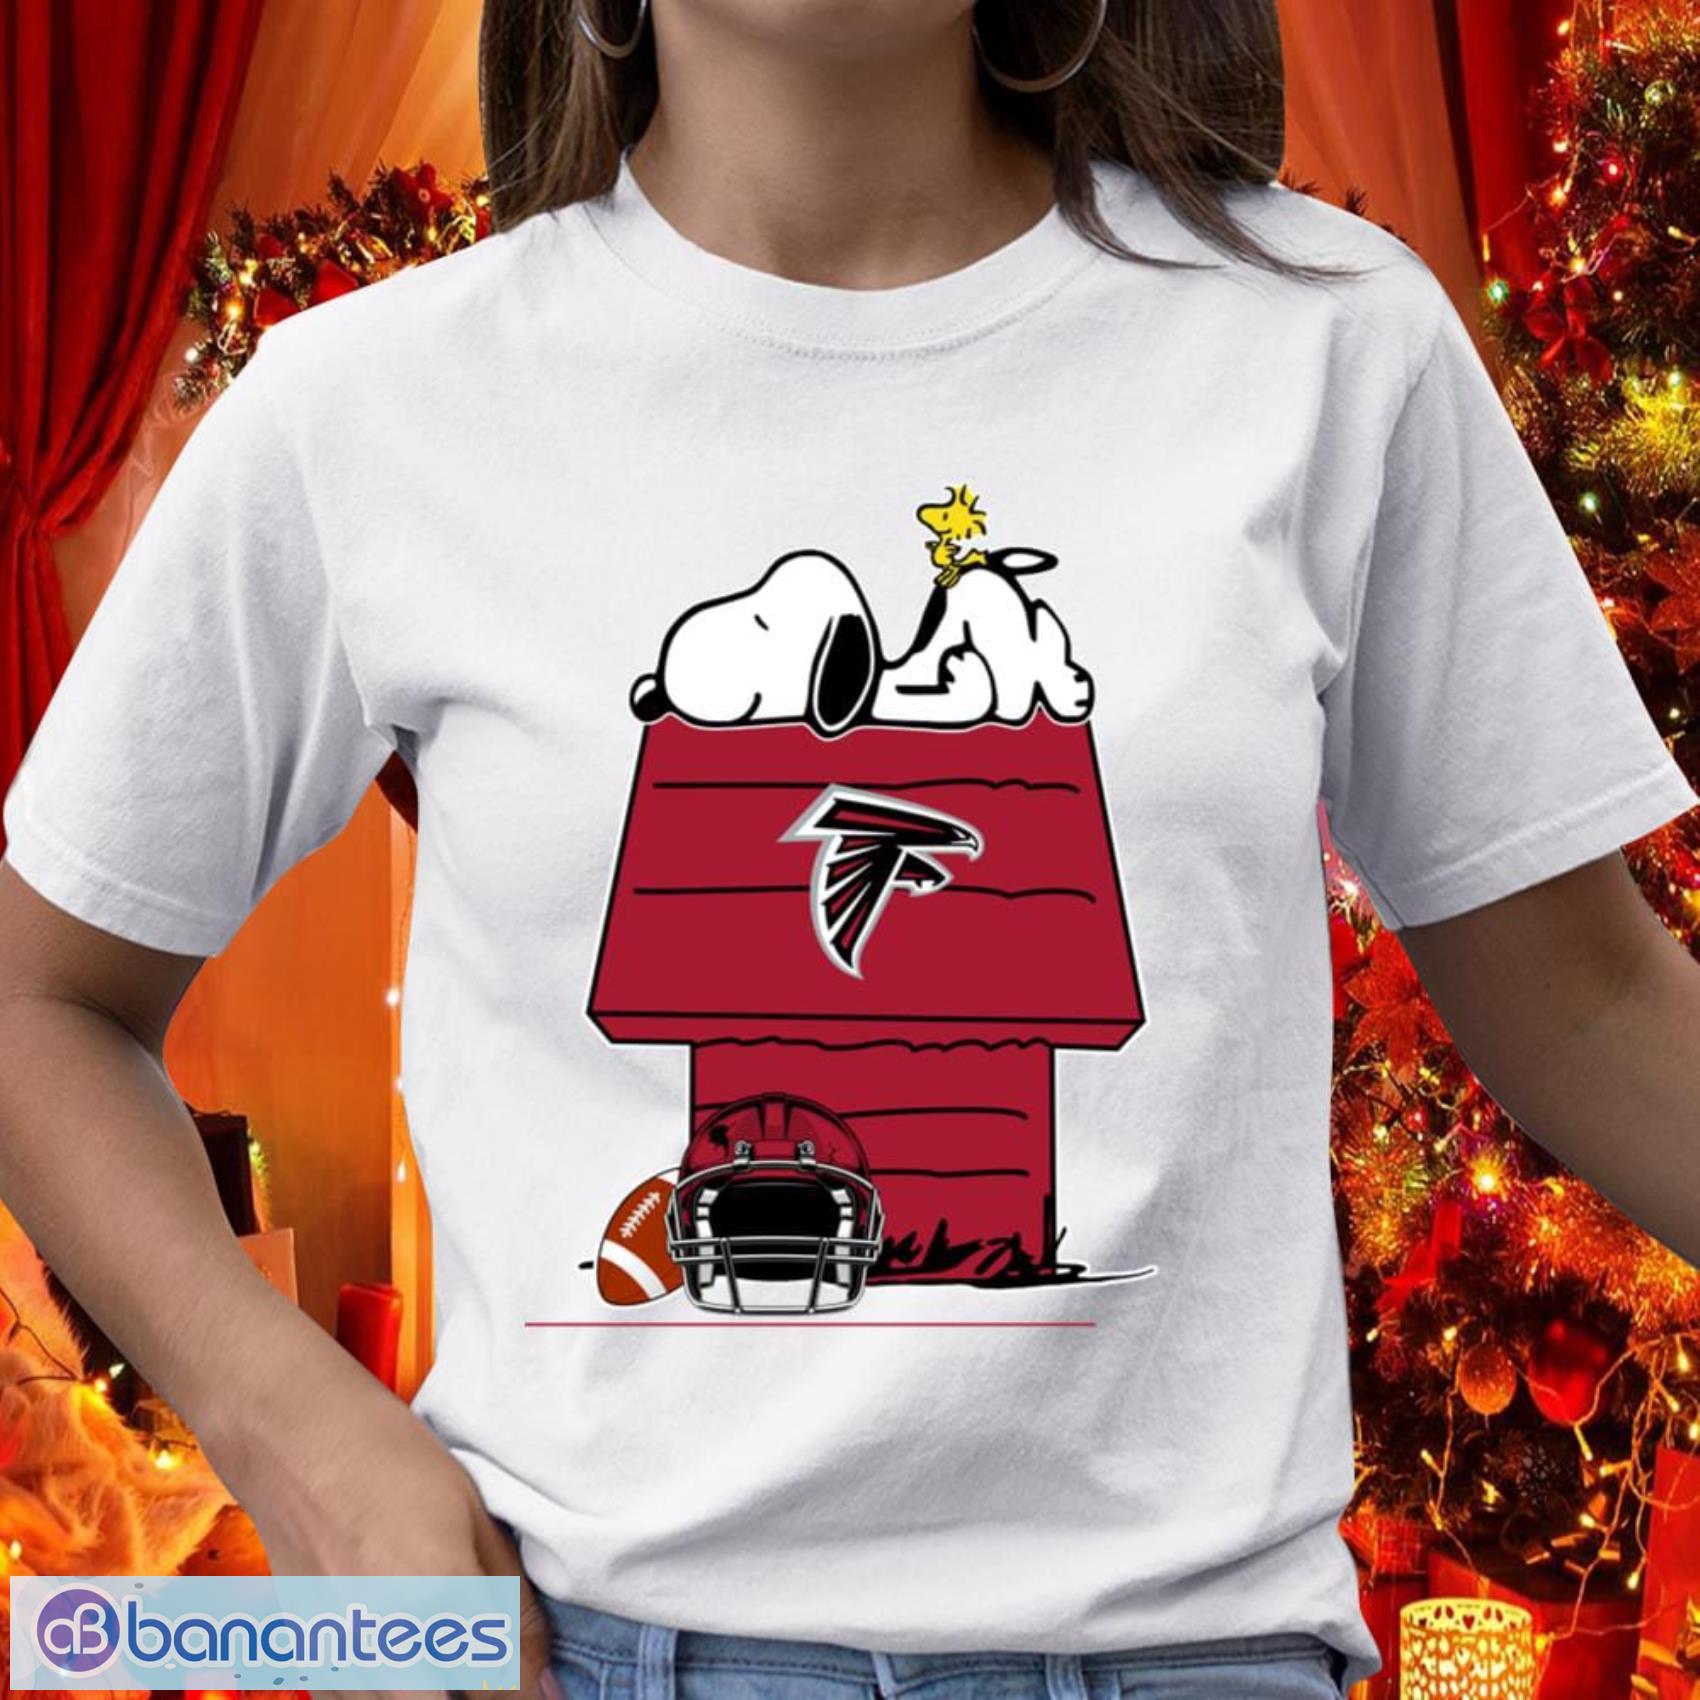 Atlanta Falcons NFL Football Gift Fr Fans Snoopy Woodstock The Peanuts Movie T Shirt - Atlanta Falcons NFL Football Snoopy Woodstock The Peanuts Movie T Shirt_1